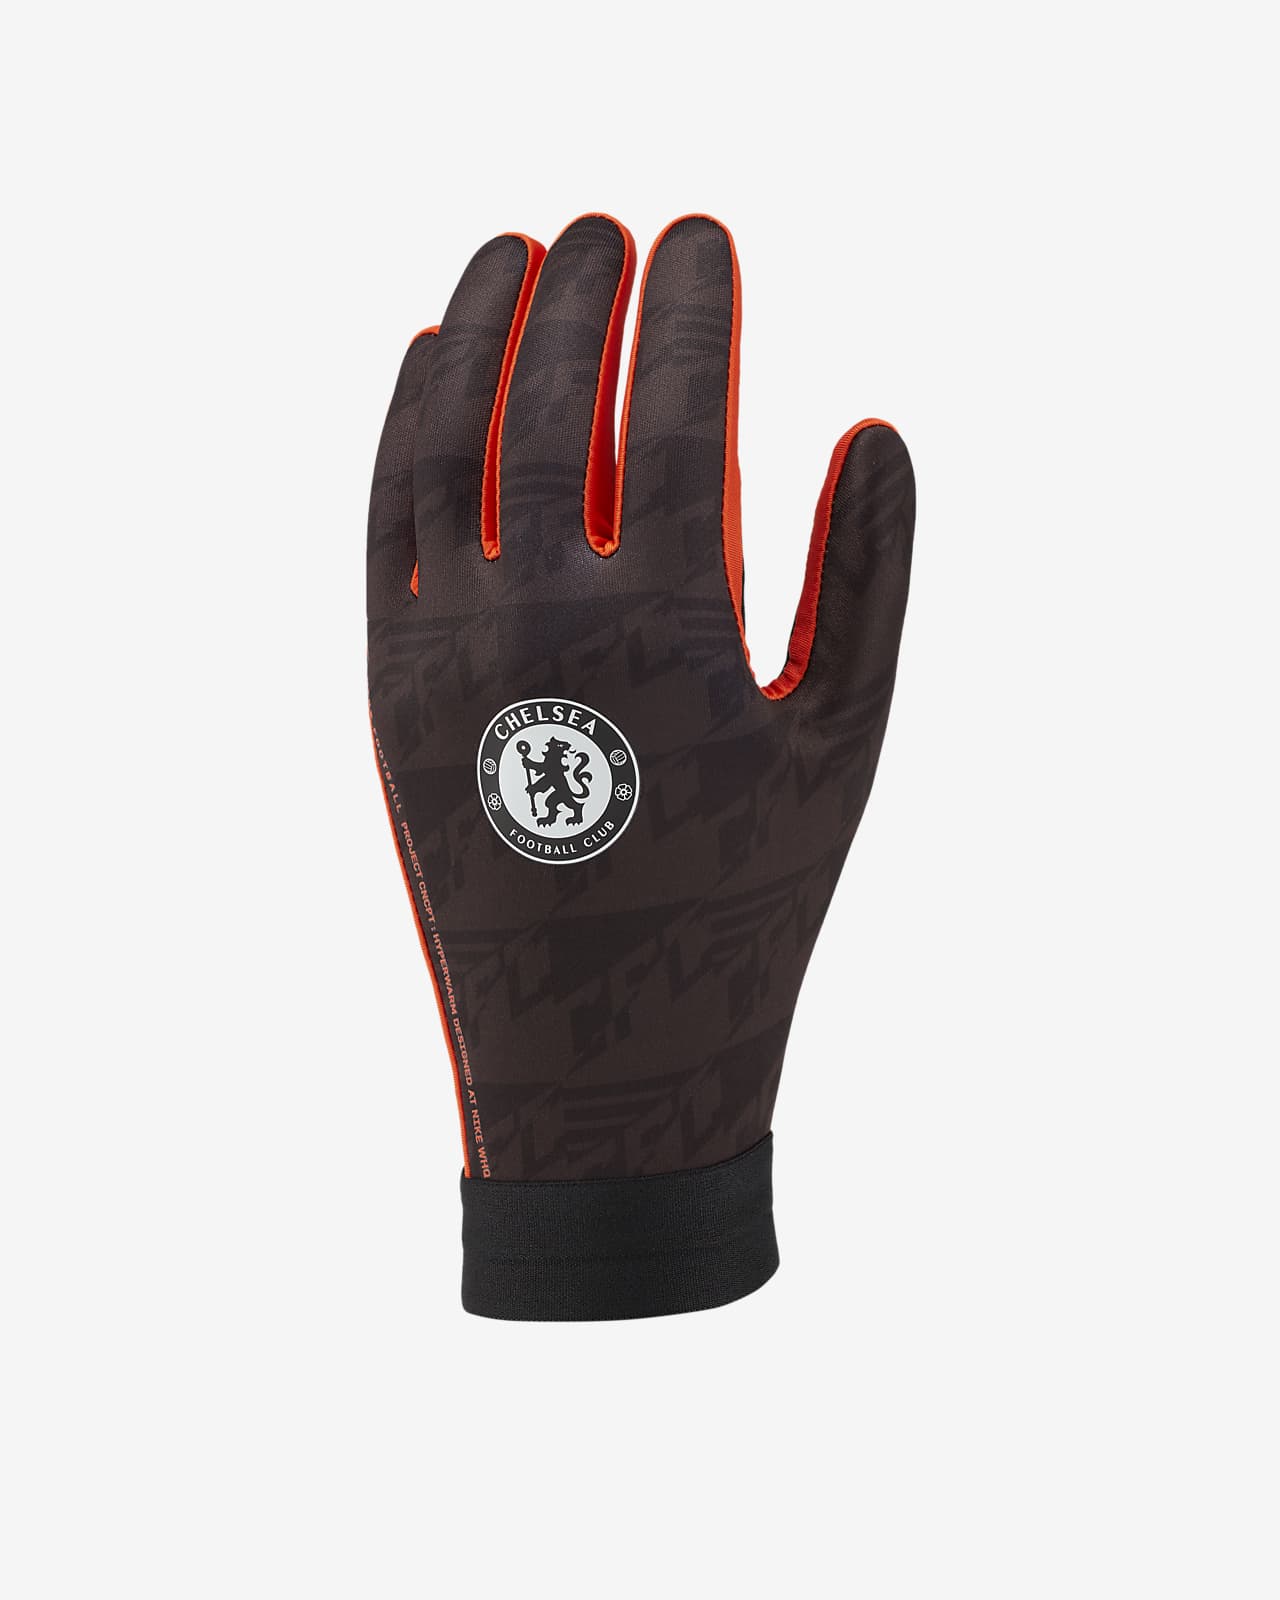 Chelsea FC HyperWarm Academy Football Gloves. Nike RO